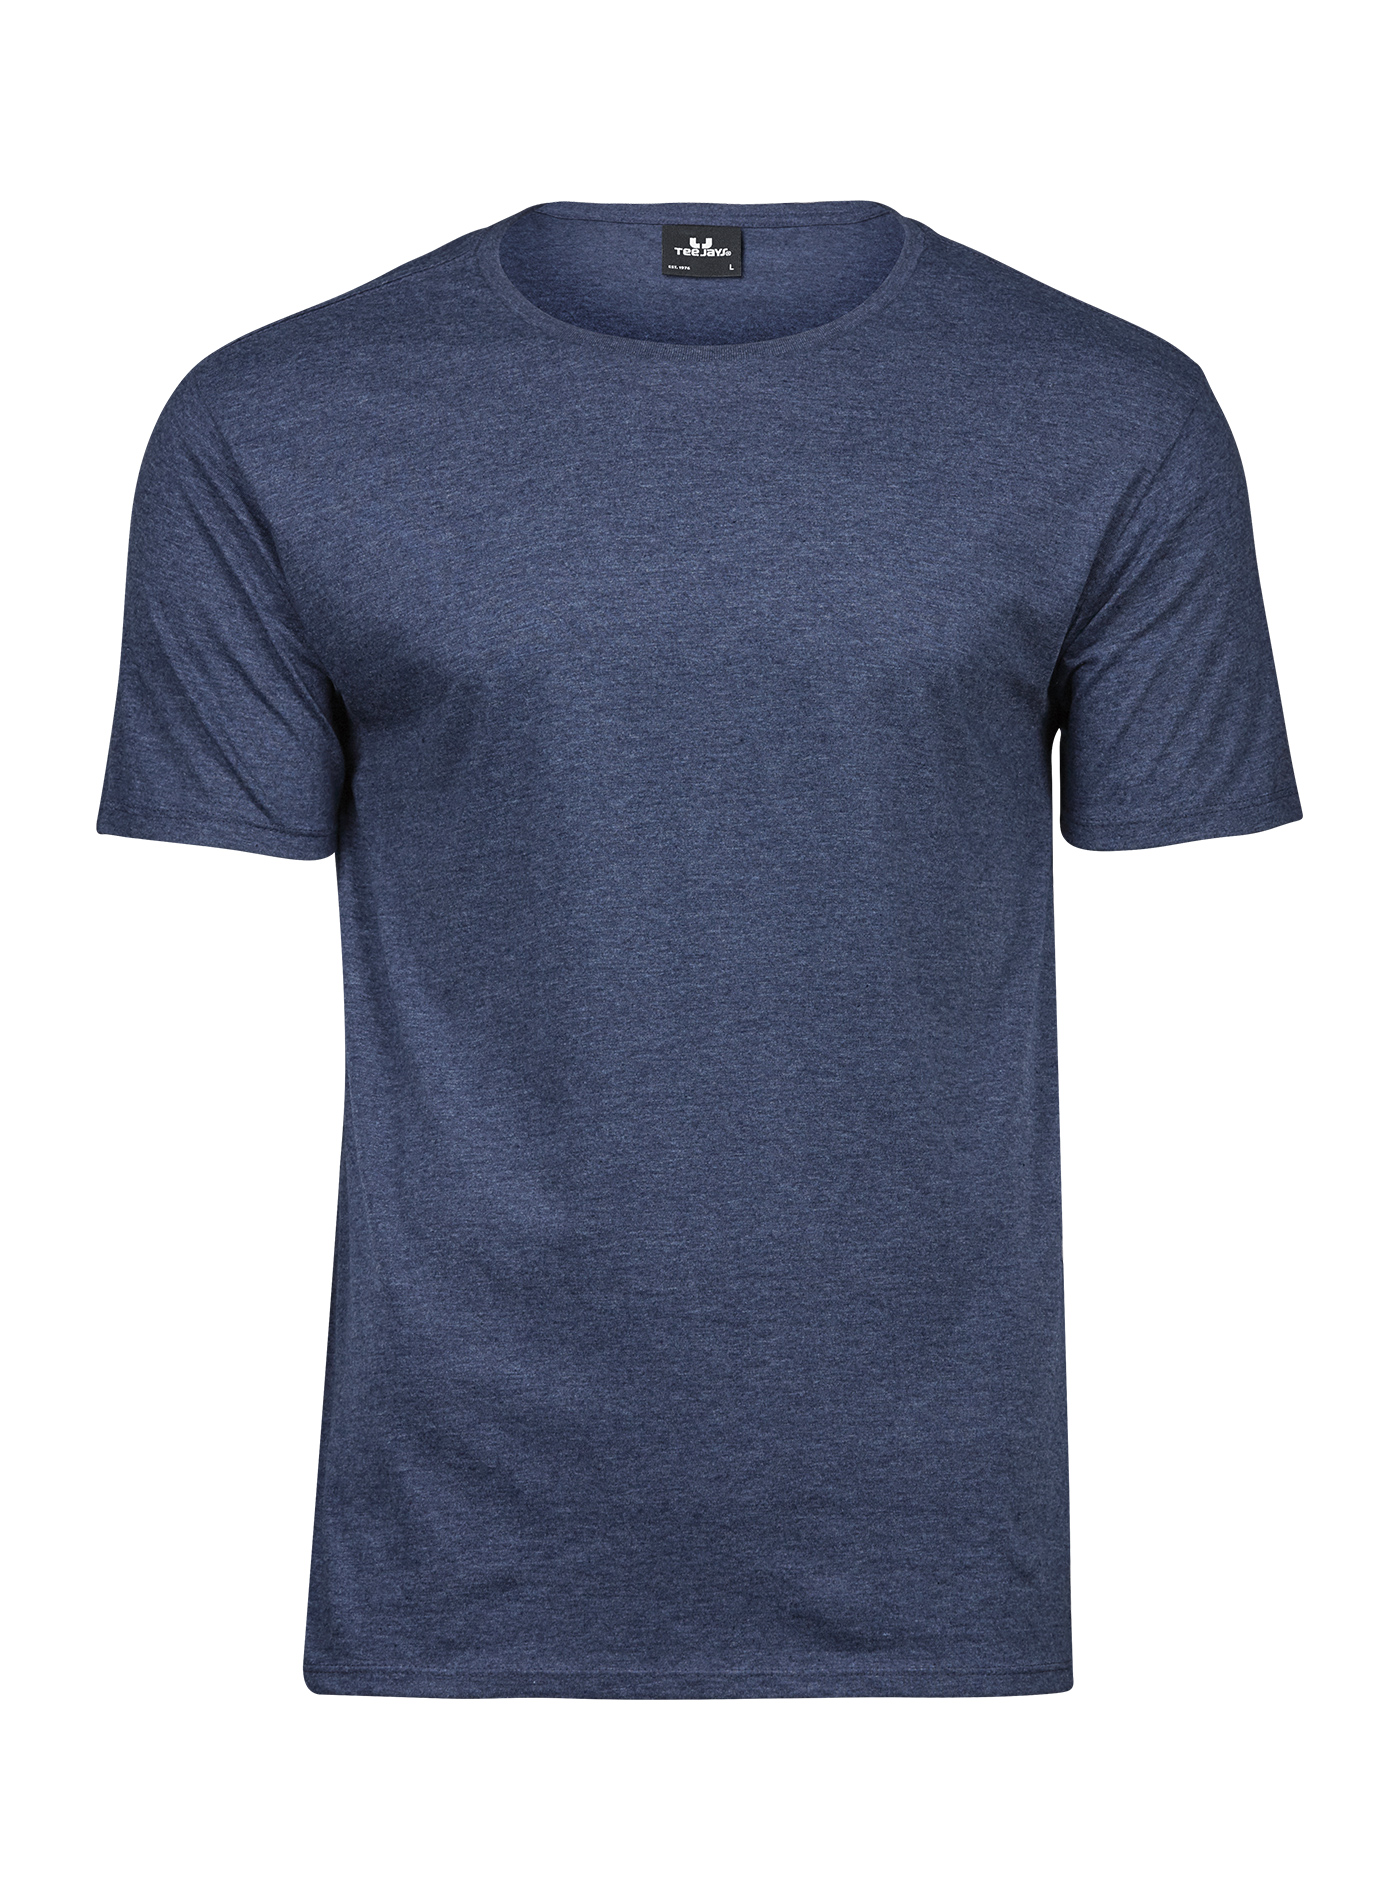 Pánské melírované tričko Tee Jays - Džínově modrá XL